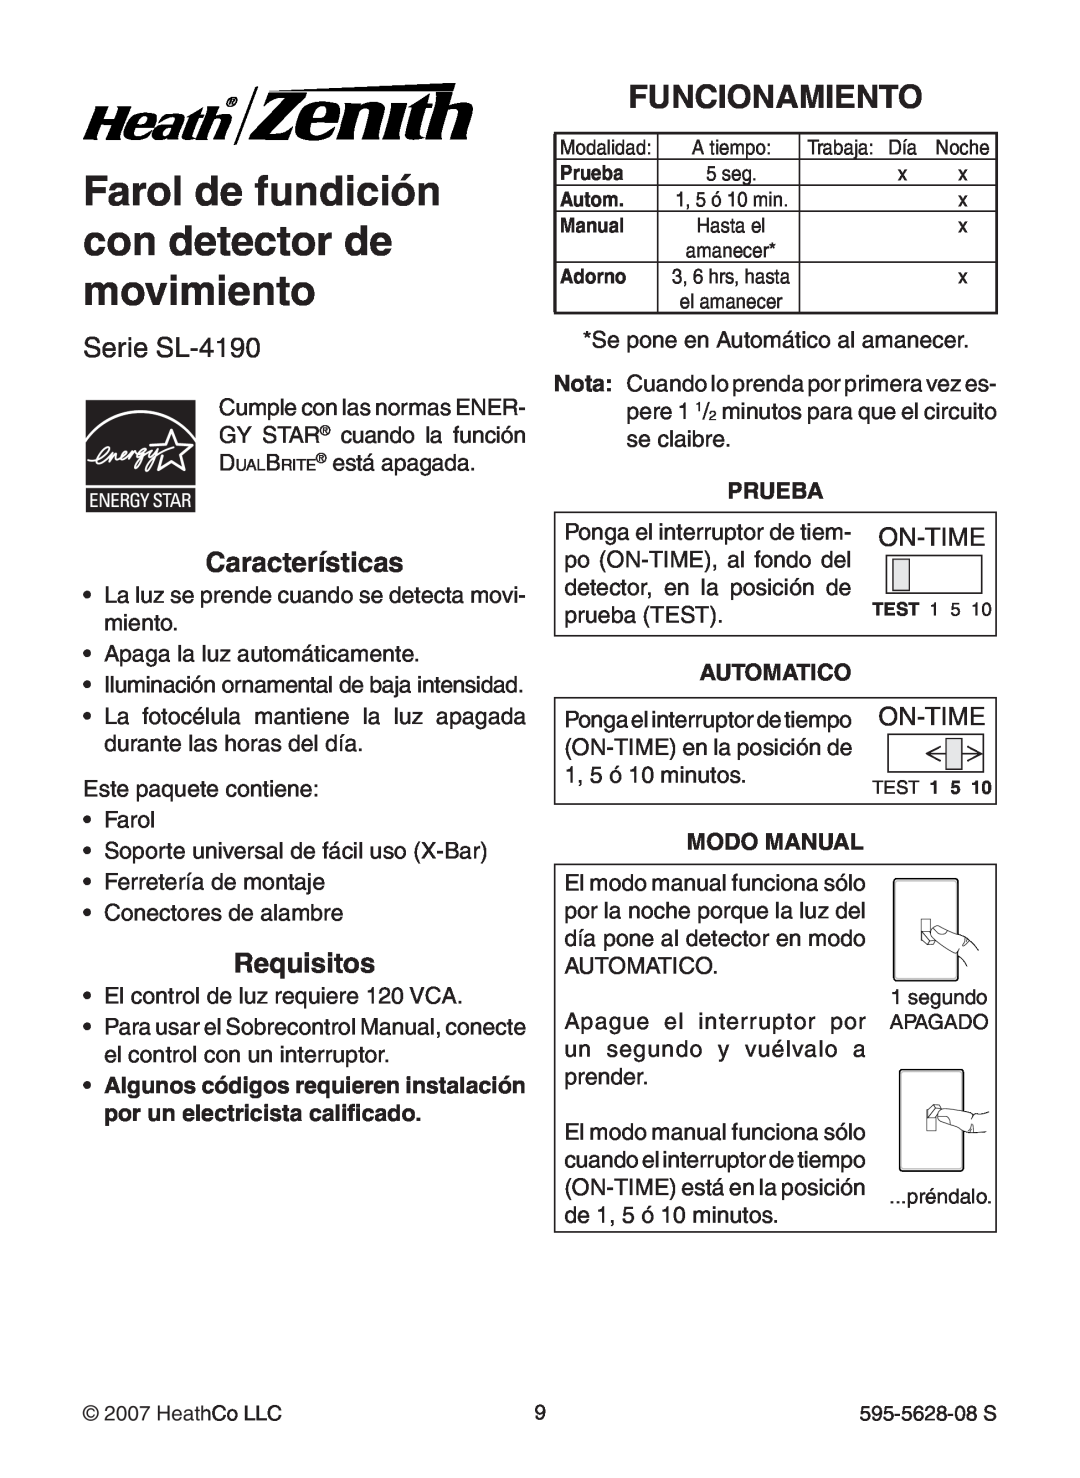 Heath Zenith SL-4190 Series Farol de fundición con detector de movimiento, Funcionamiento, Serie SL-4190, Características 